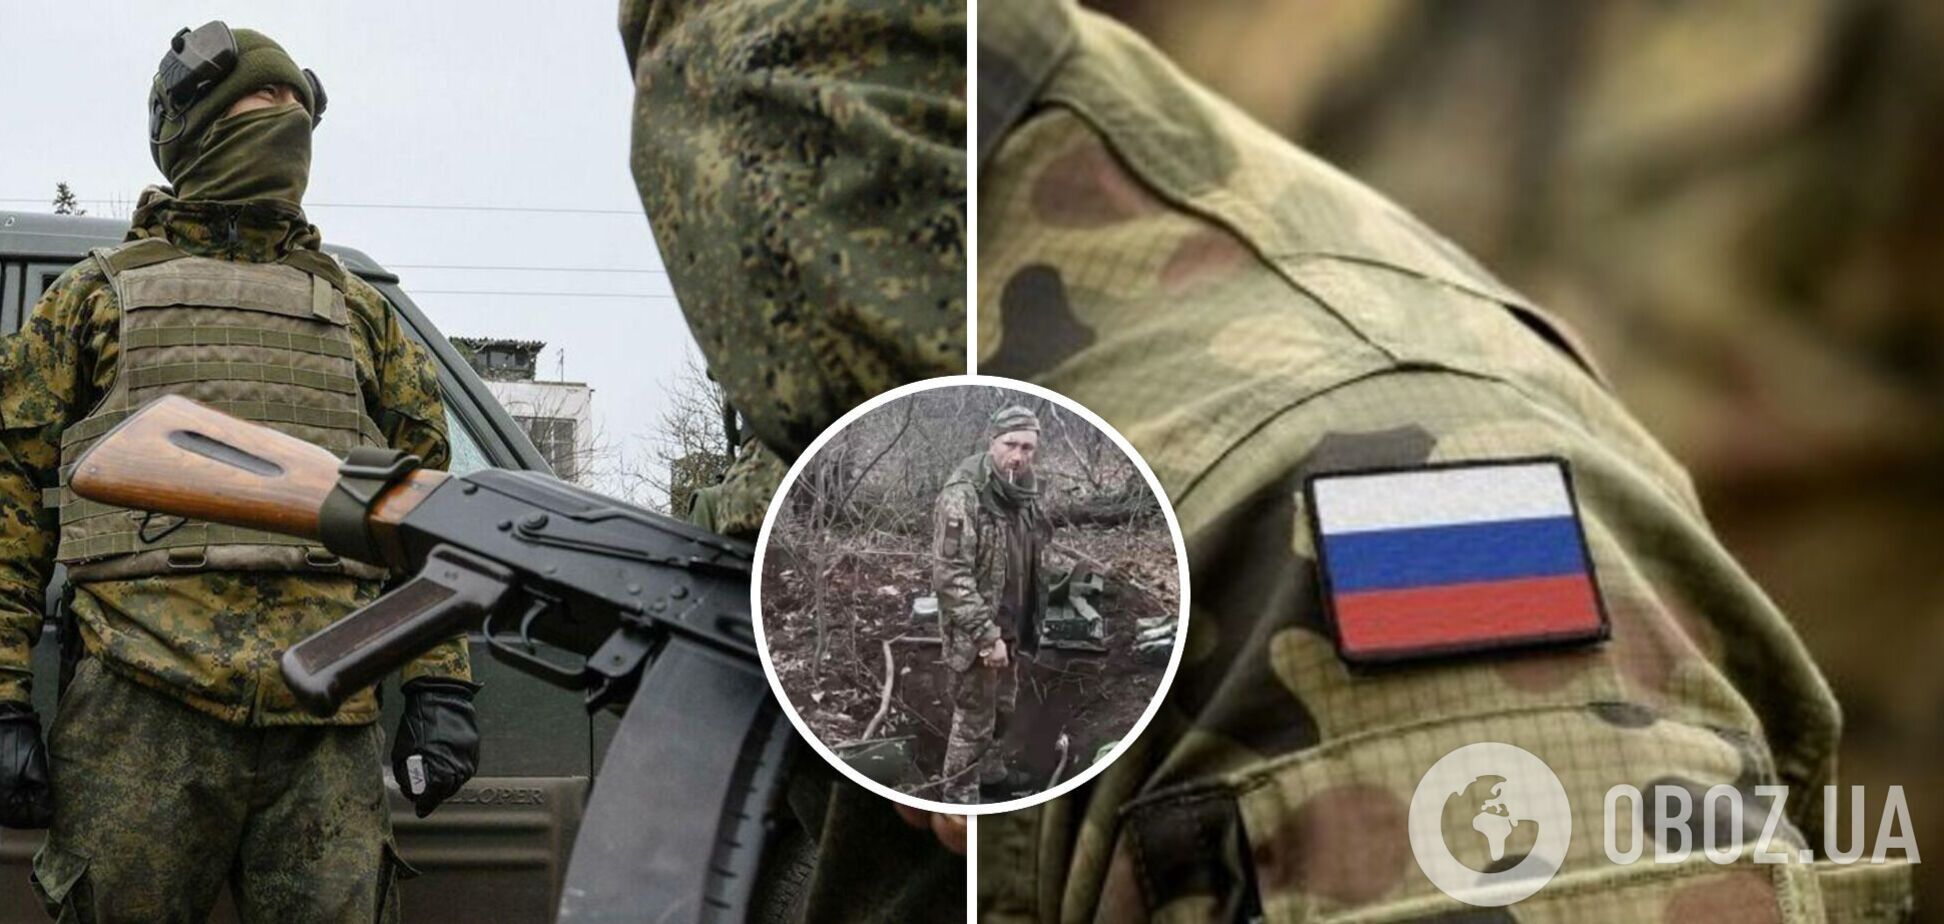 Расстрел пленного за слова 'Слава Украине' не единственный: у Украины есть свидетельства о других казнях безоружных военных